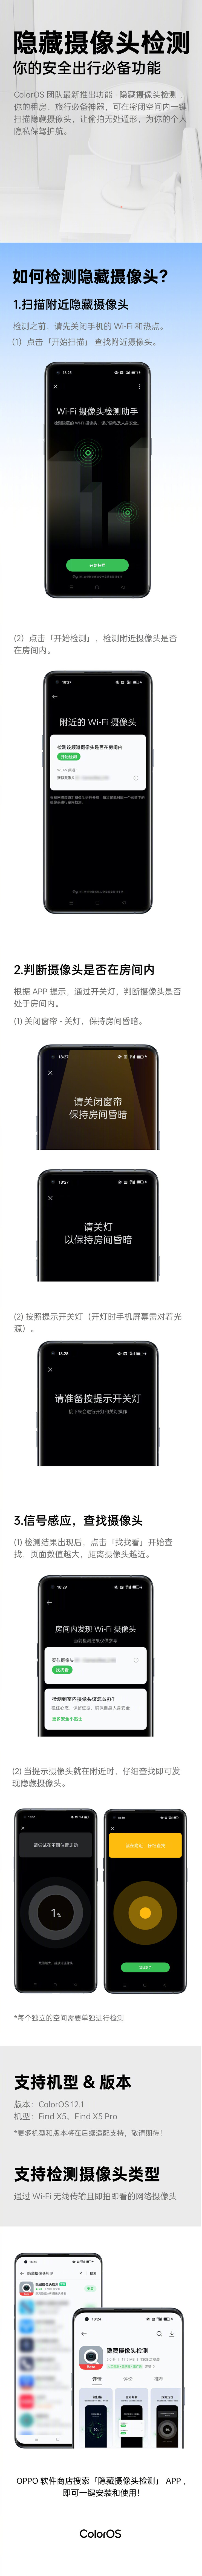 Infografía de la nueva función Hidden Camera Detect de OPPO. (Fuente: OPPO vía Weibo)